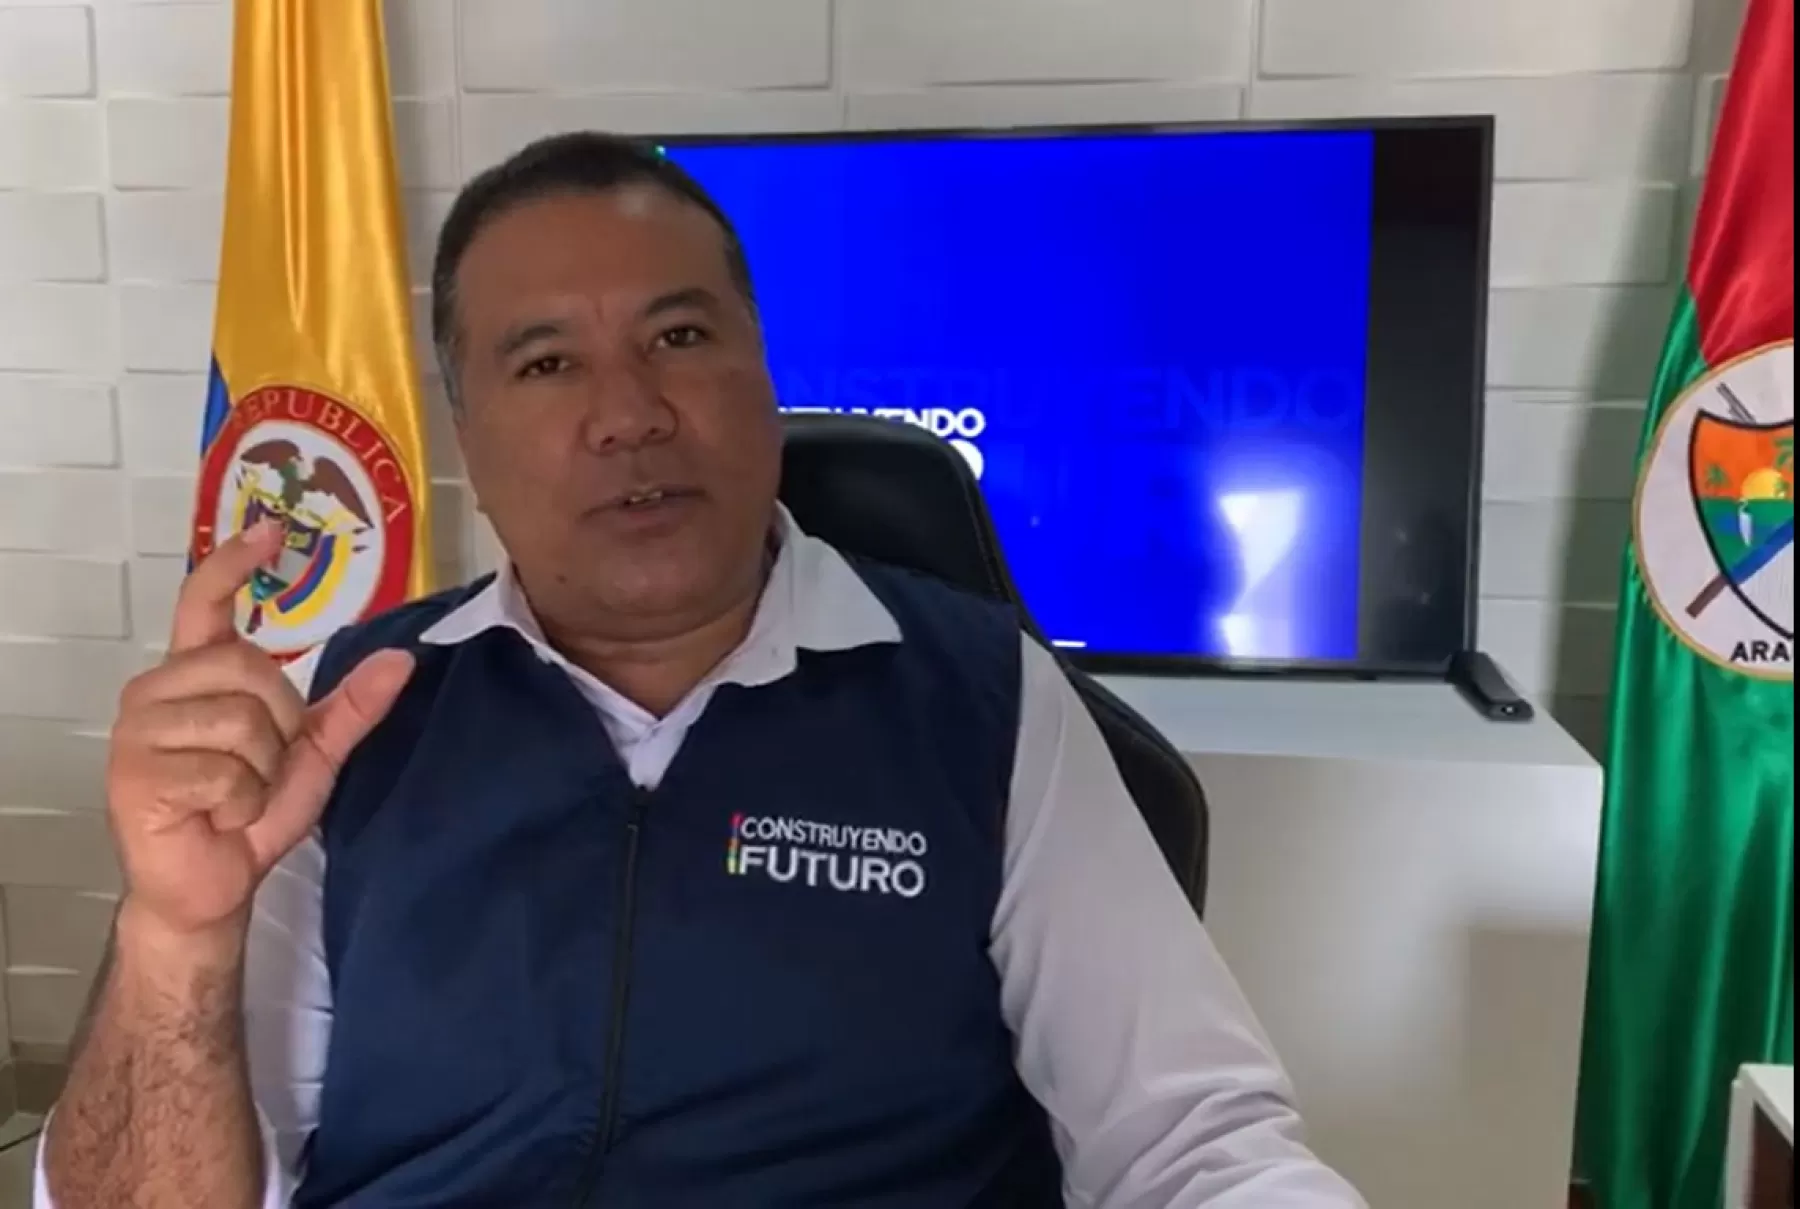 El paquete alimentario está diseñado para grupos familiares de 4 a 6 personas se entregará en los siete municipios informó el gobernador de Arauca, Facundo Castillo Cisneros.